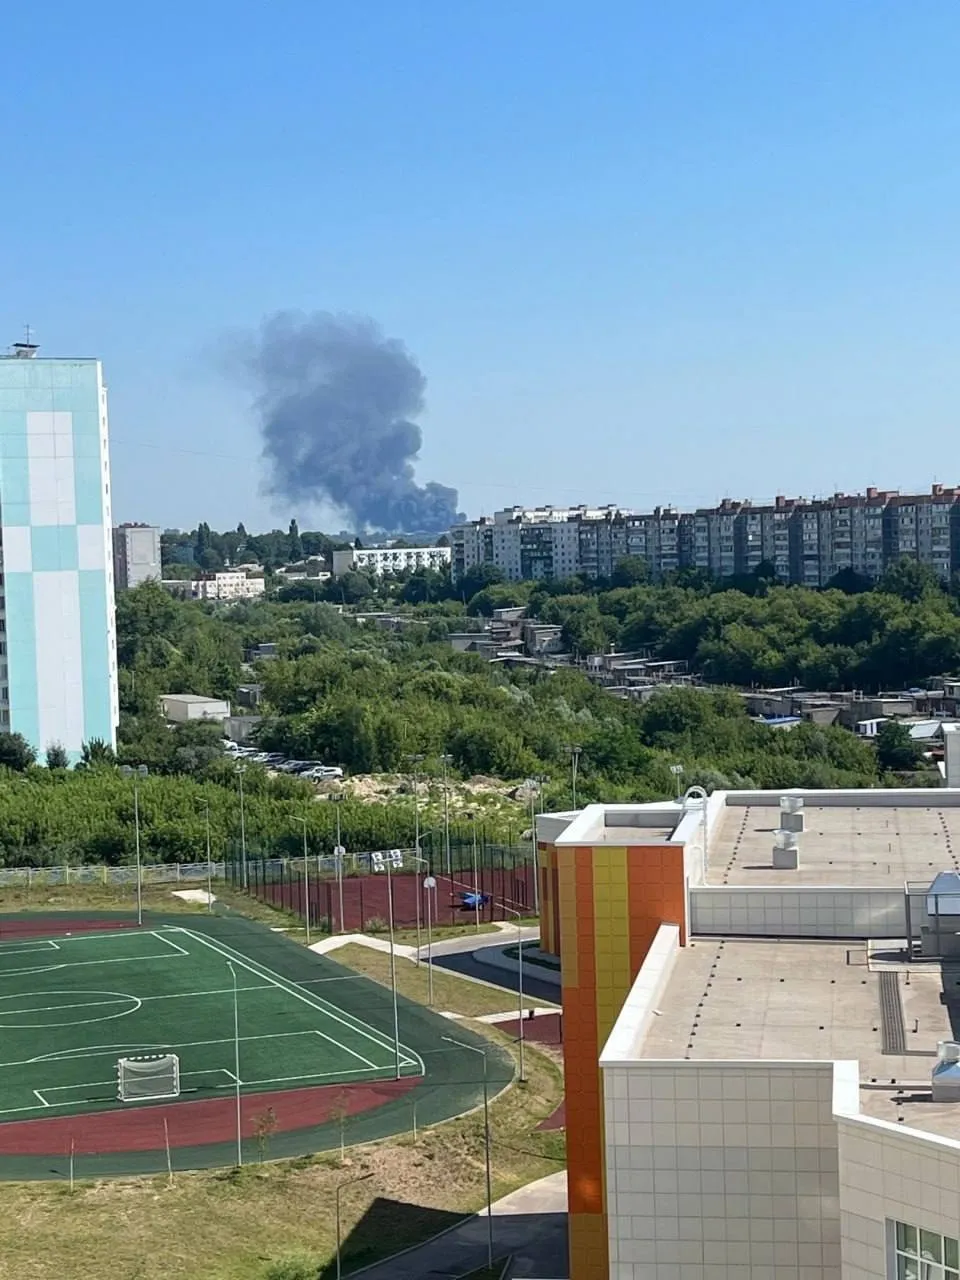 В российском Курске вспыхнул мощный пожар: валит черный дым. Фото и видео